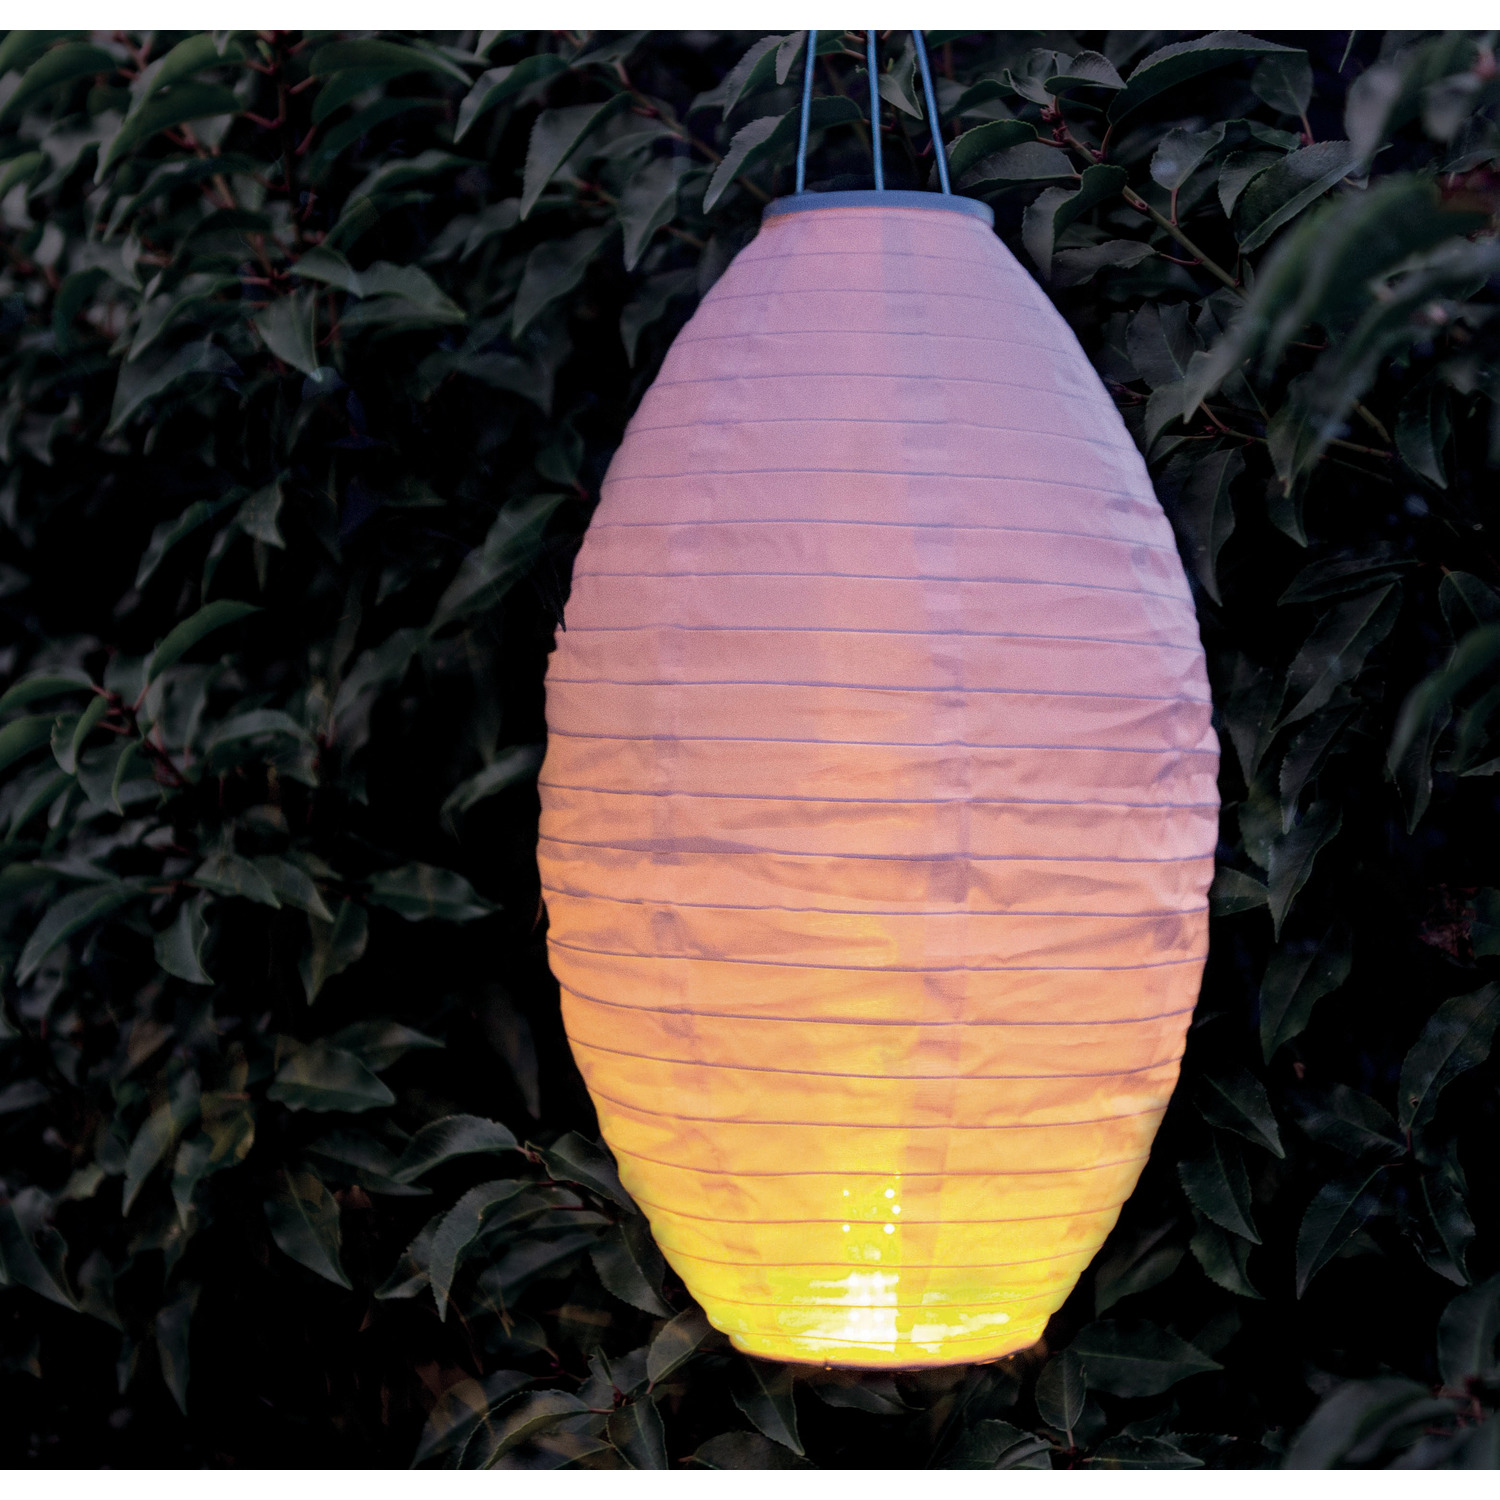 6x stuks luxe solar lampion/lampionnen wit met realistisch vlameffect 30 x 50 cm